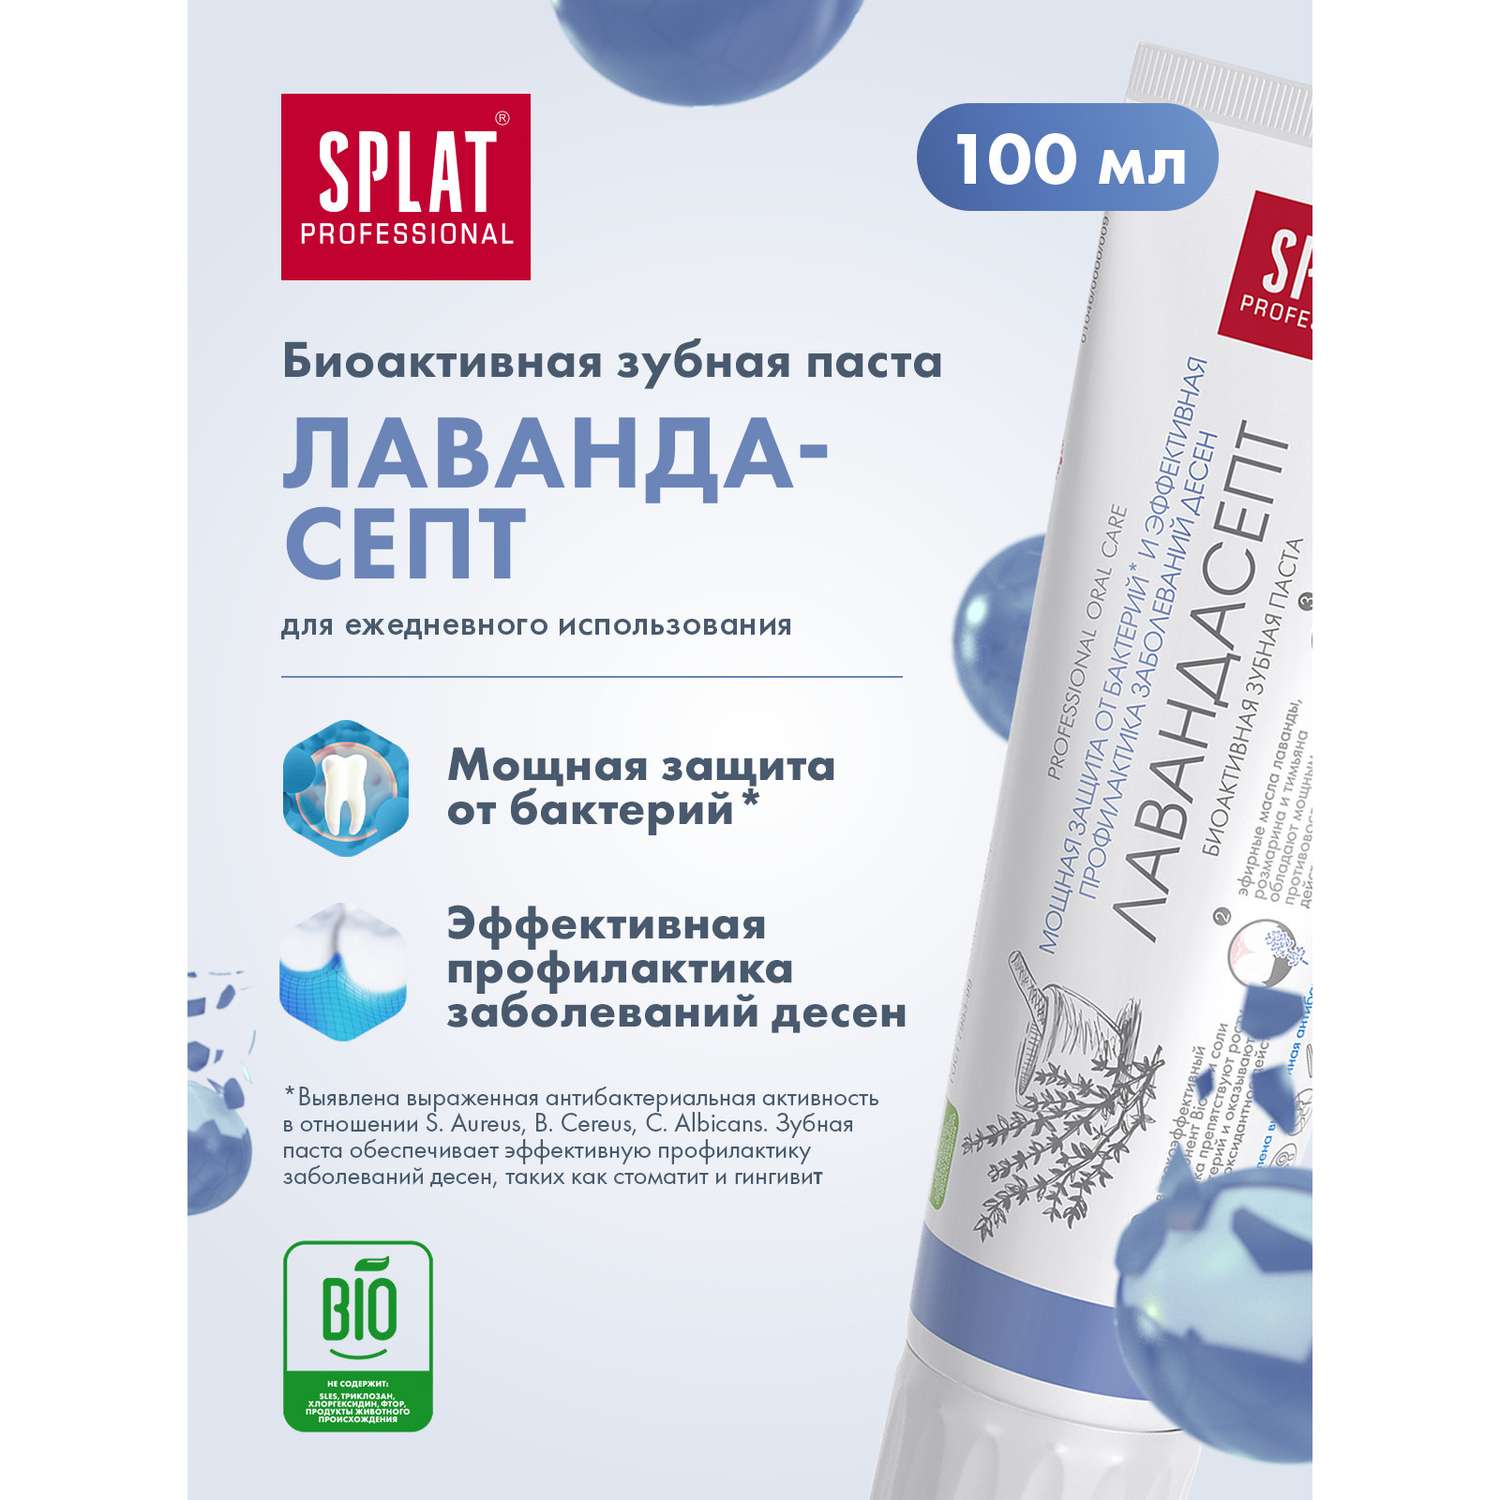 Зубная паста Splat Лавандасепт для защиты от бактерий 100 мл 2 шт - фото 2